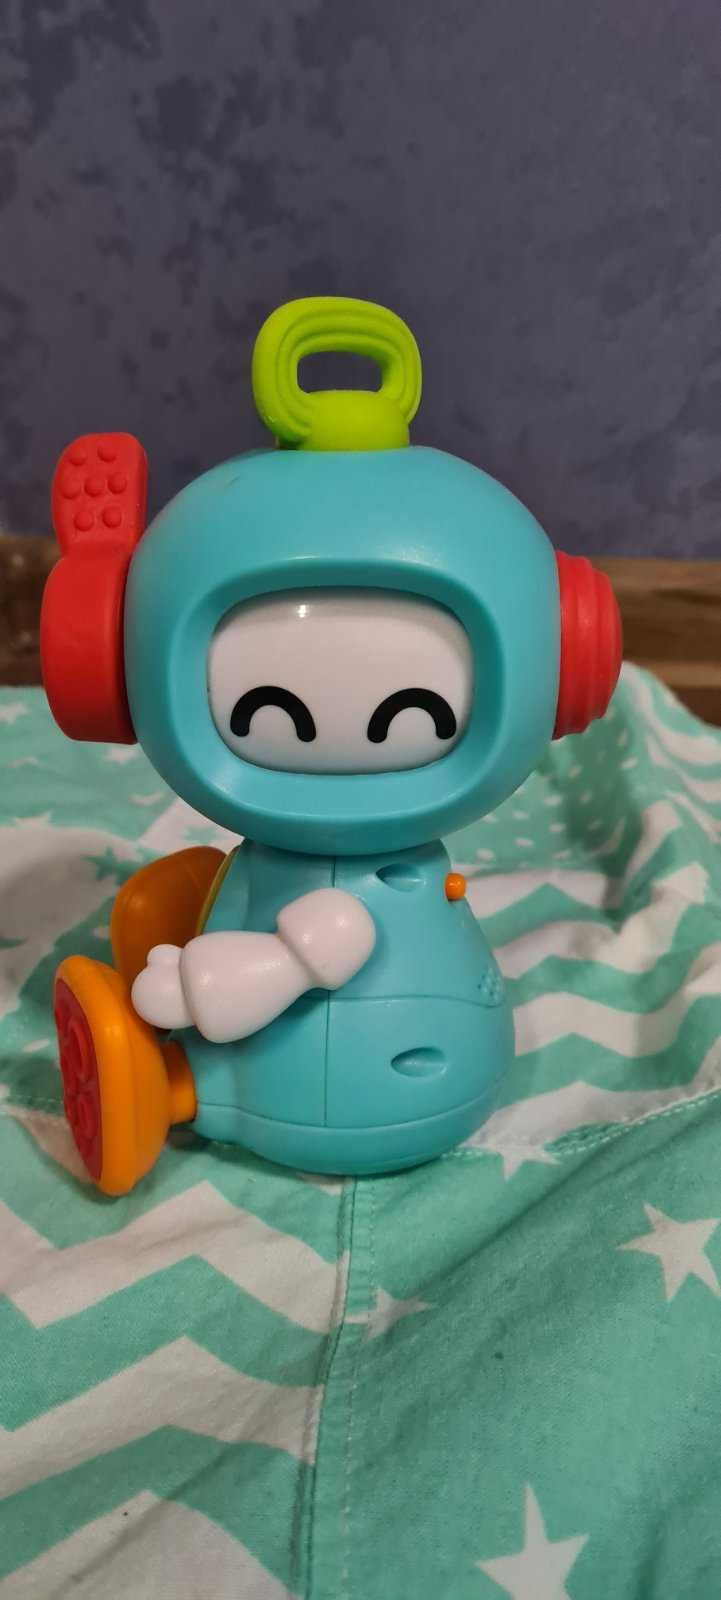 Набор из развивающих игрушек Sensory робот  и Huile Toys мороженщик